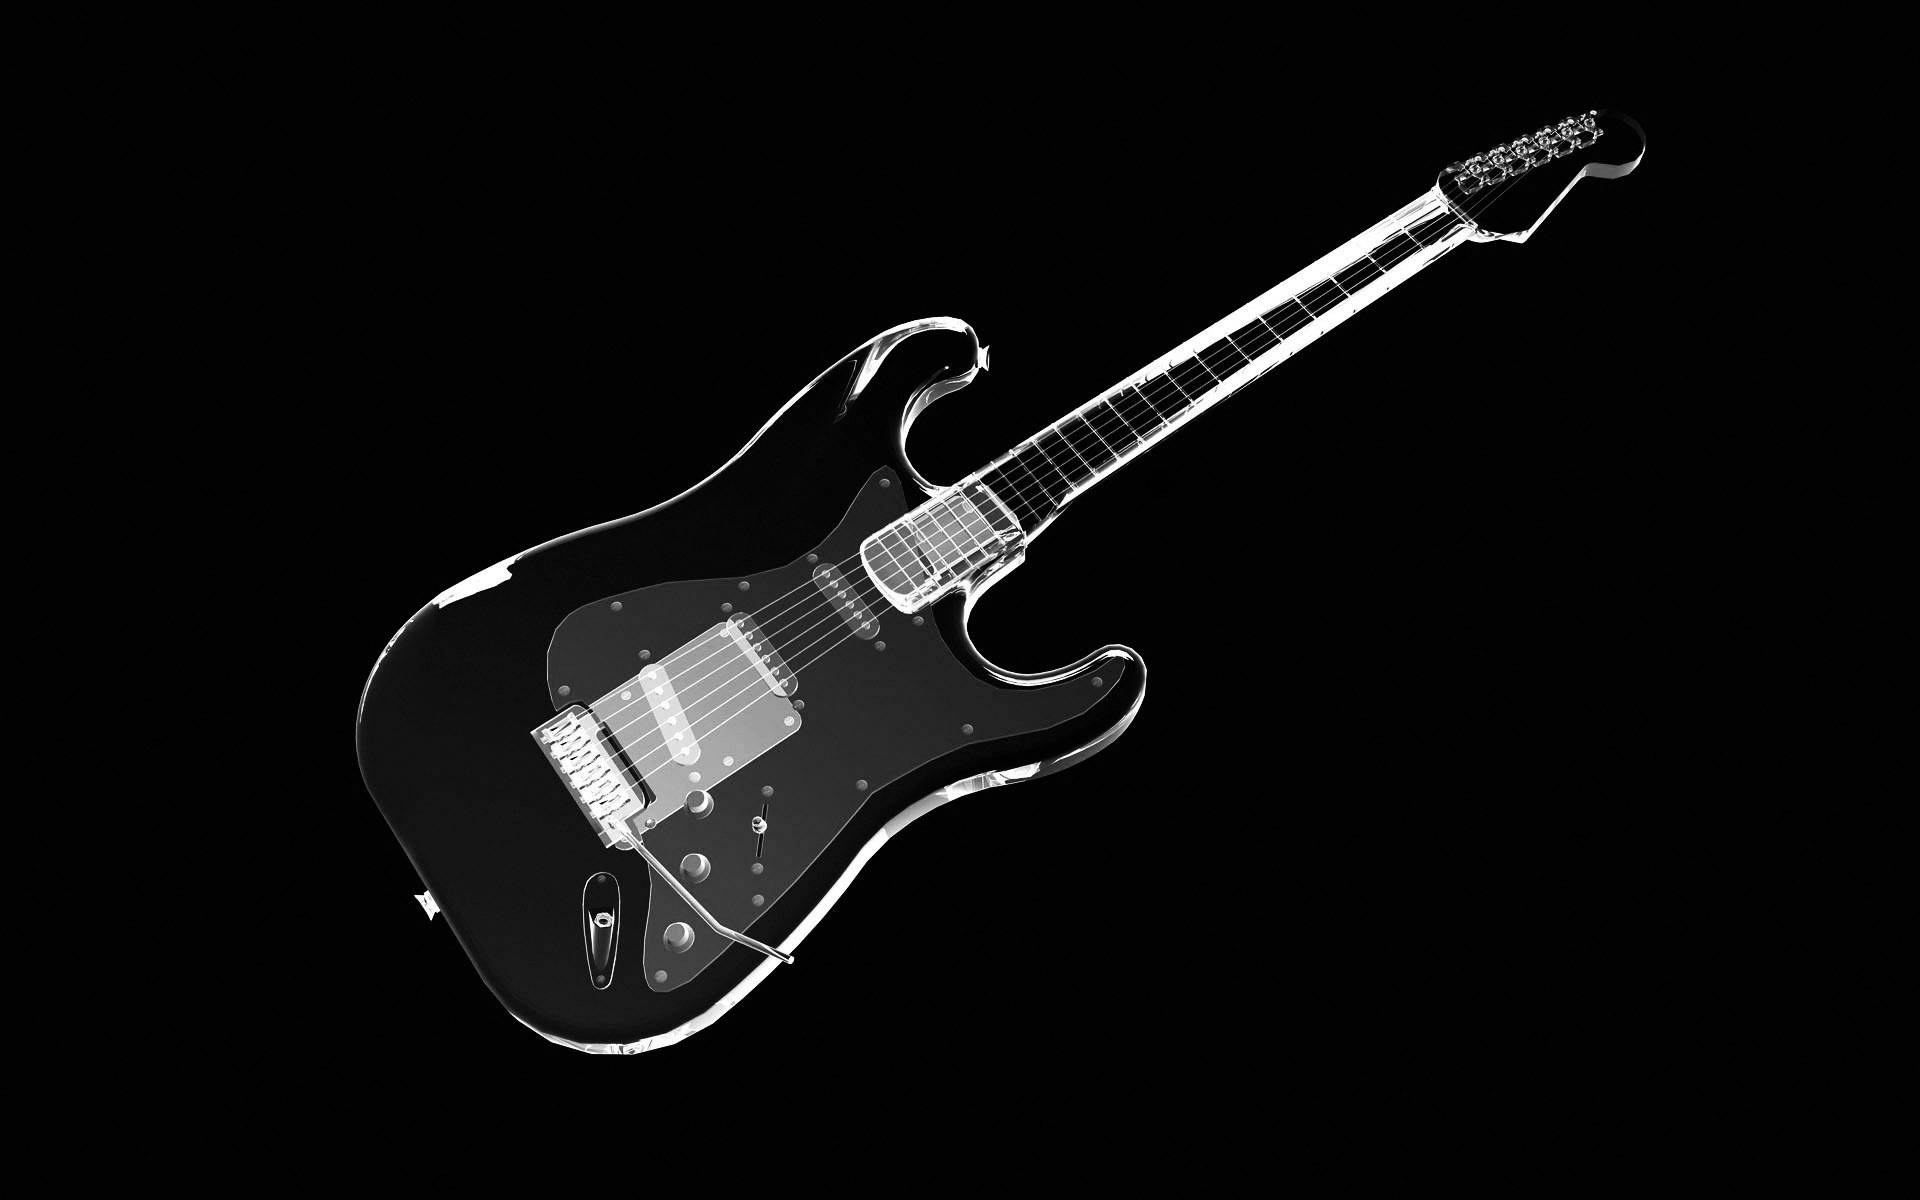 Stylischeschwarze E-gitarre. Wallpaper